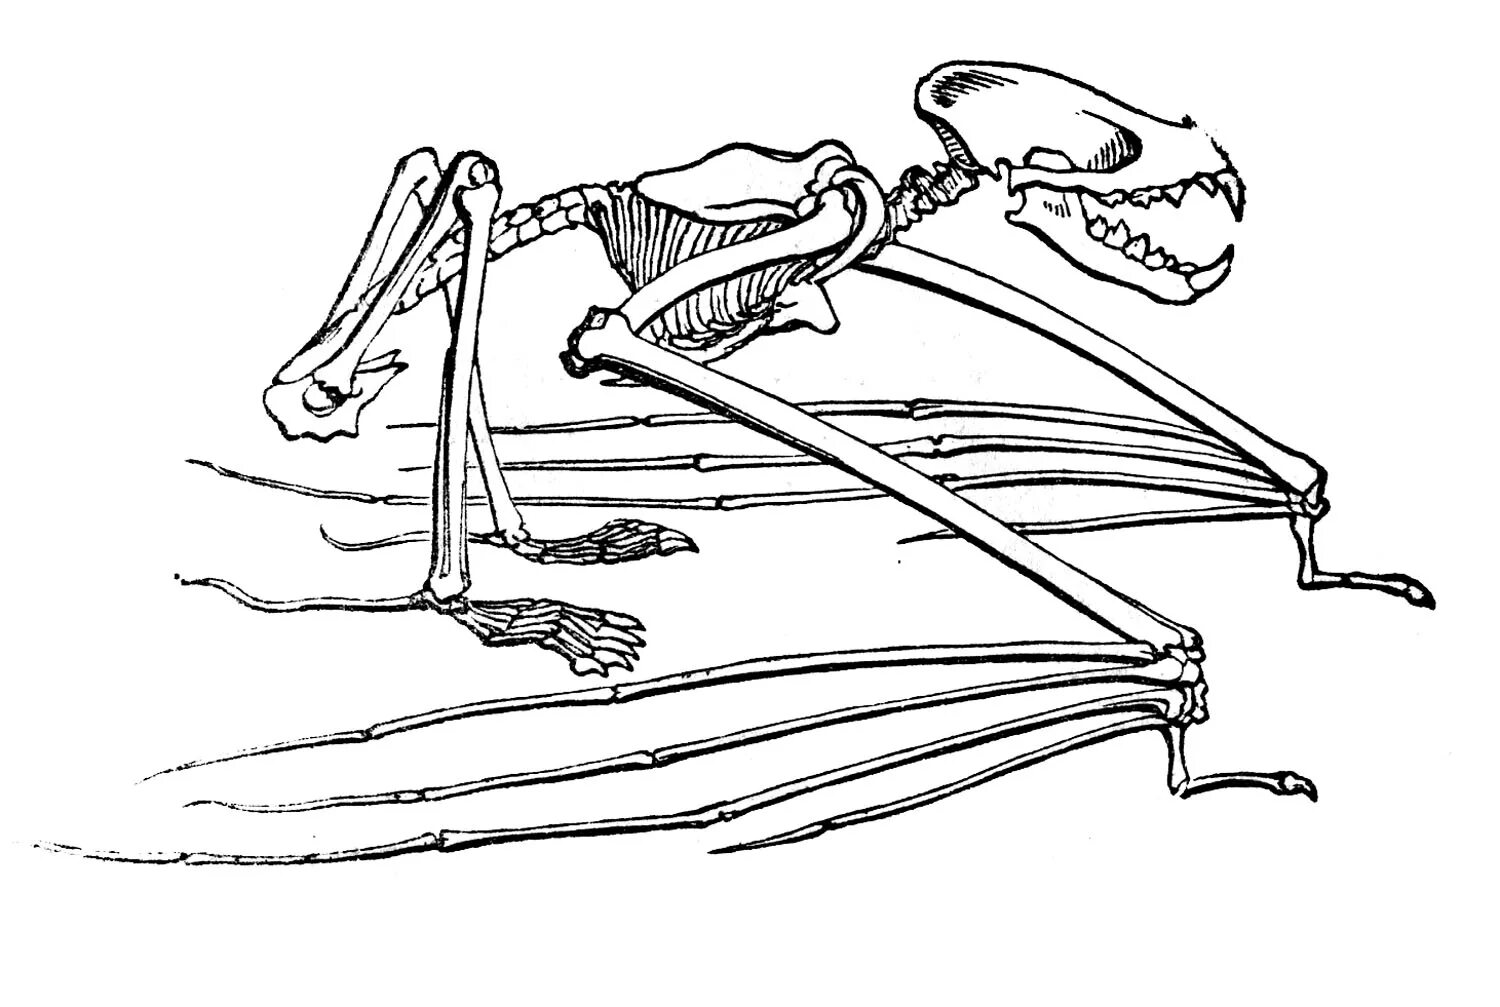 Передние конечности крота и ласты кита. Скелет рукокрылых. Рукокрылые строение скелета. Строение скелета летучей мыши. Скелет крылана.